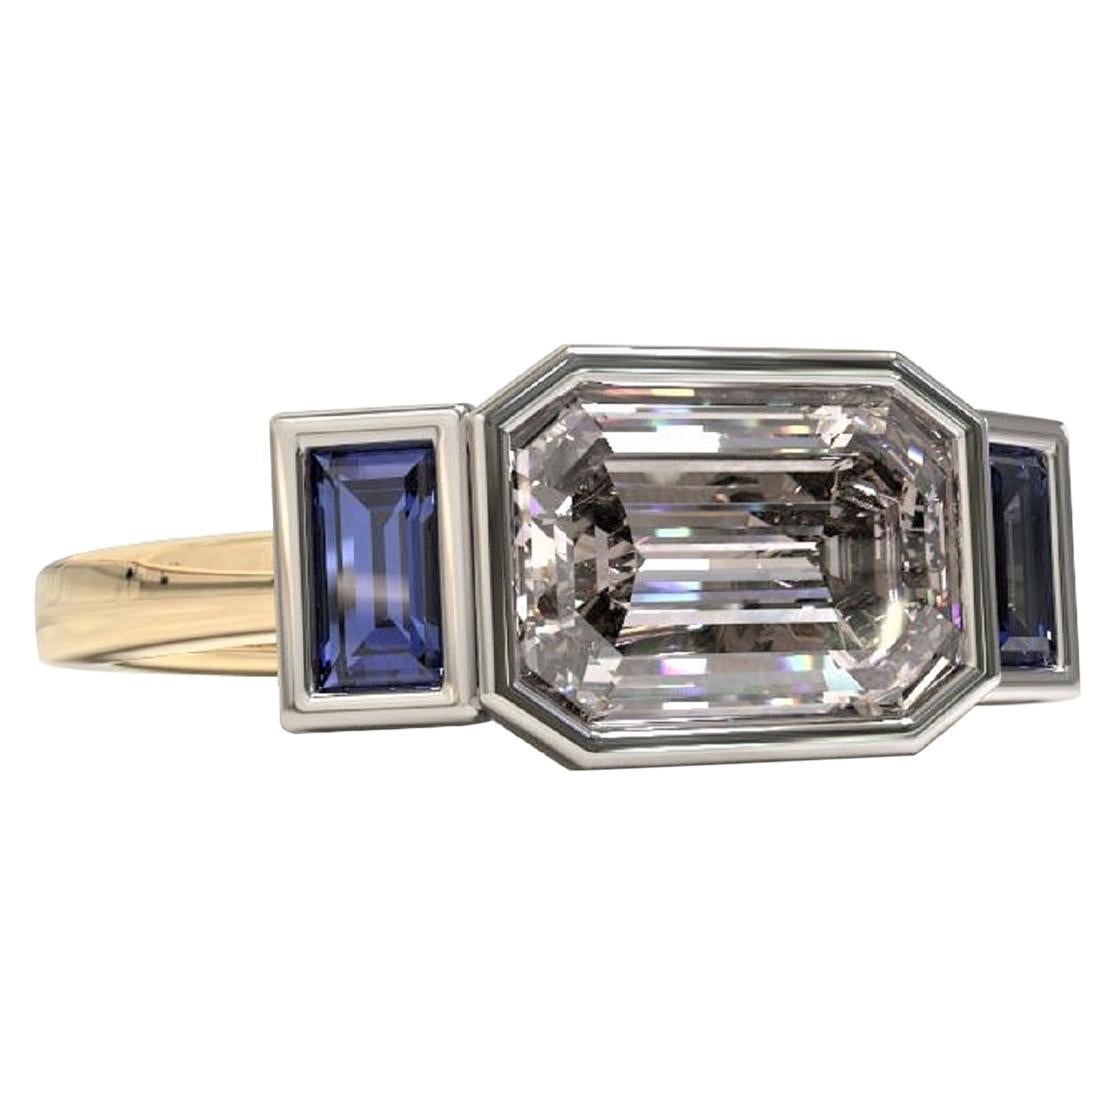 Three Stones Emerald Cut 1.88 Carat Sapphire Engagement Ring in Platinum & Gold